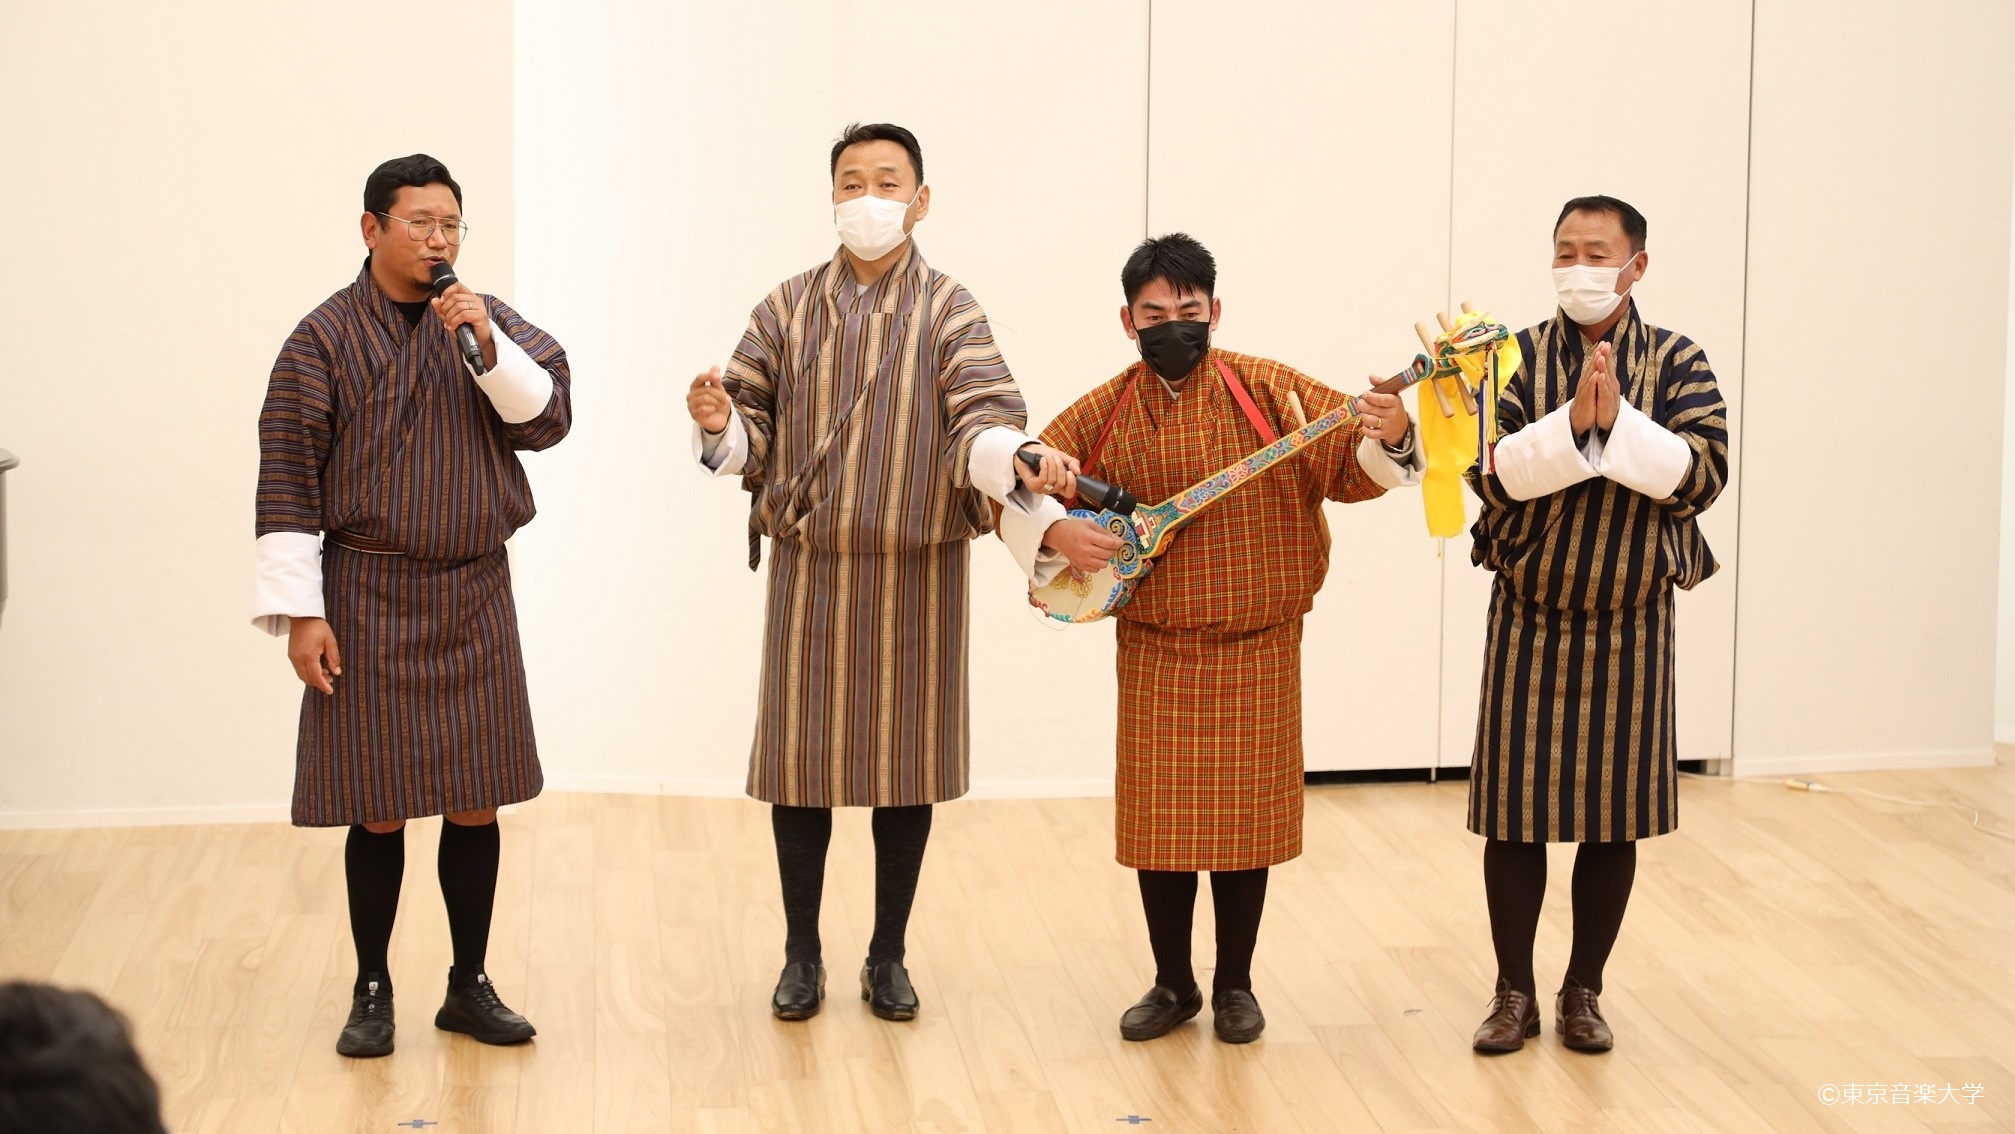 「ブータン・日本の伝統音楽の研究交流 ～レクチャーコンサート～」が開催されました